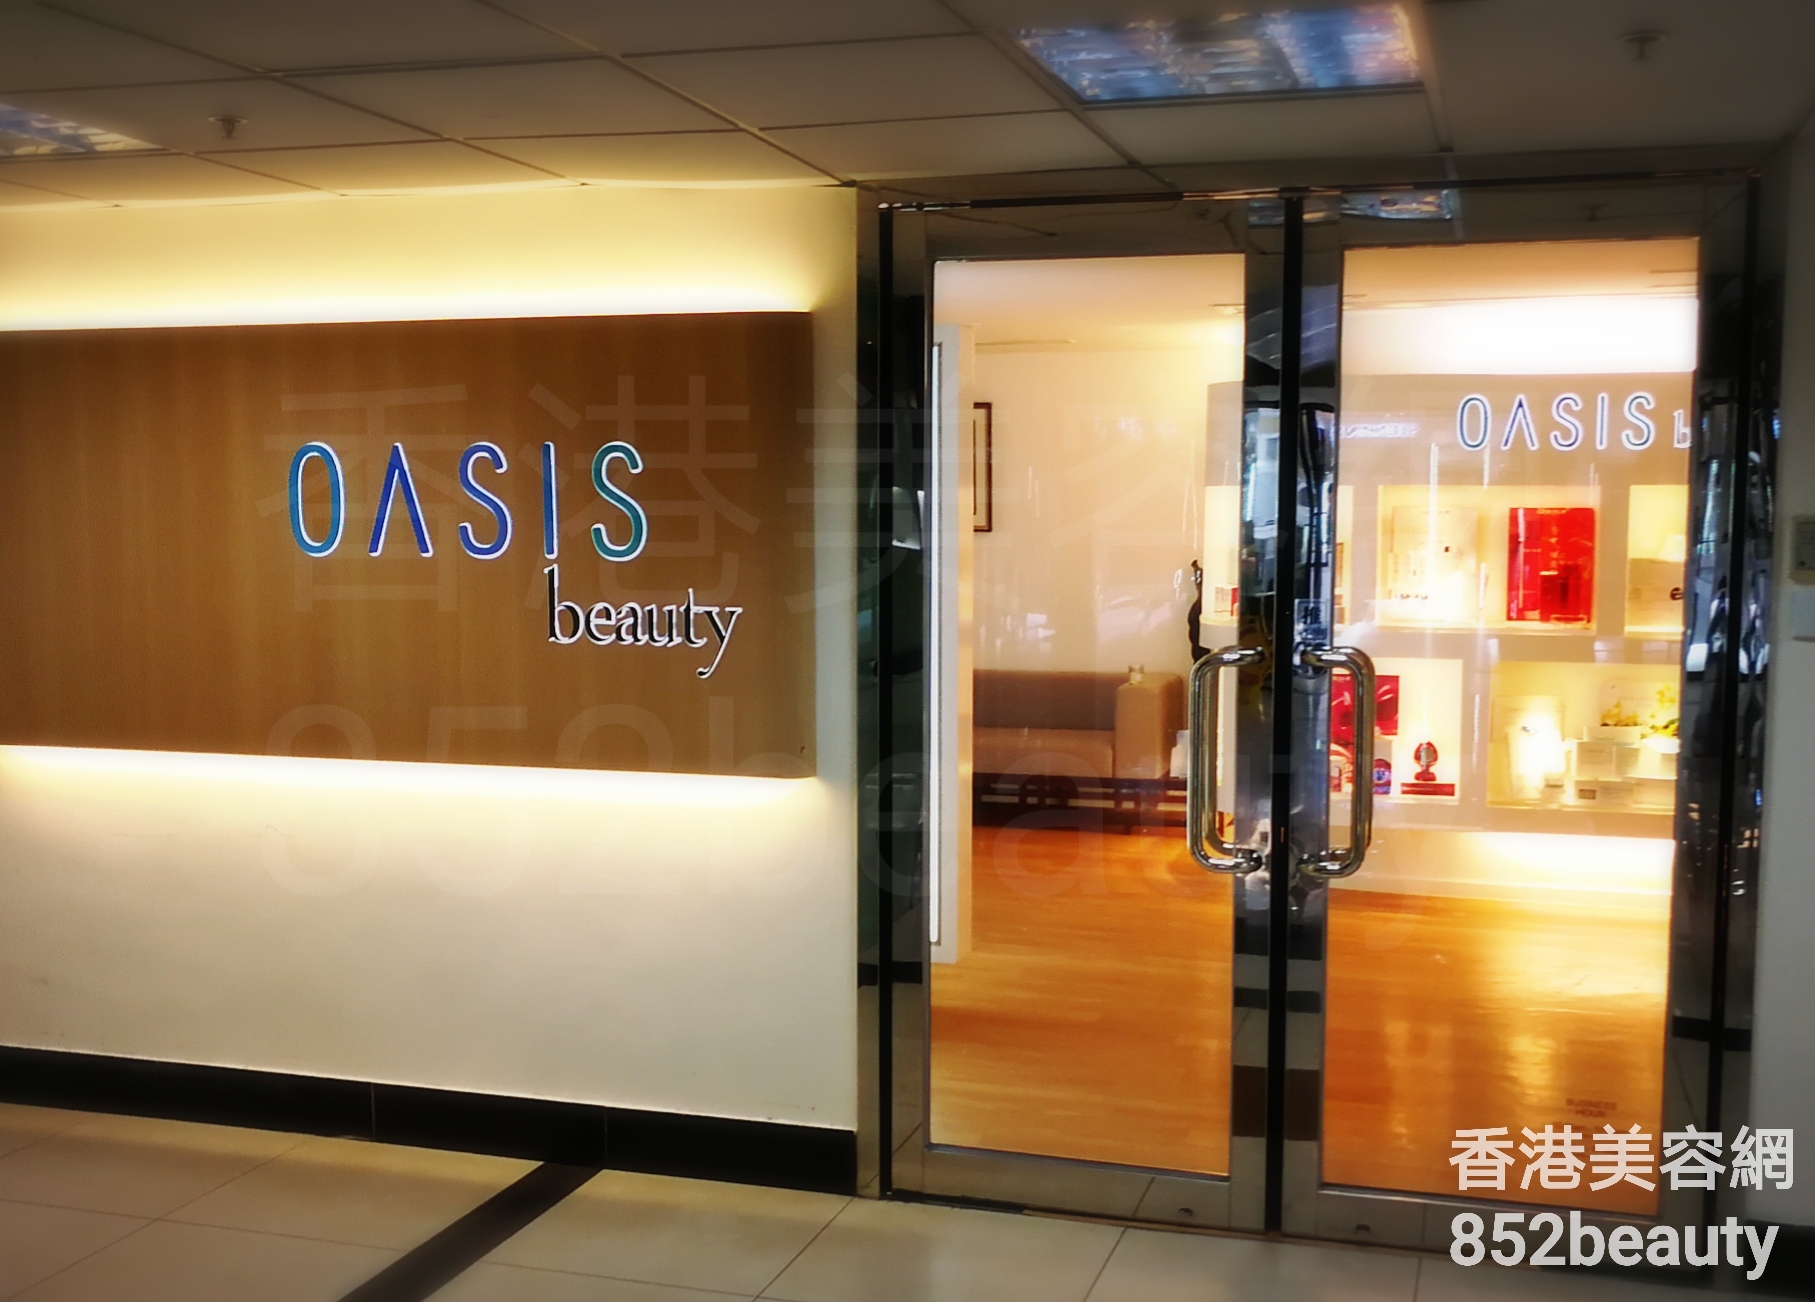 美容院 Beauty Salon 集团OASIS beauty (屯門店) @ 香港美容网 HK Beauty Salon